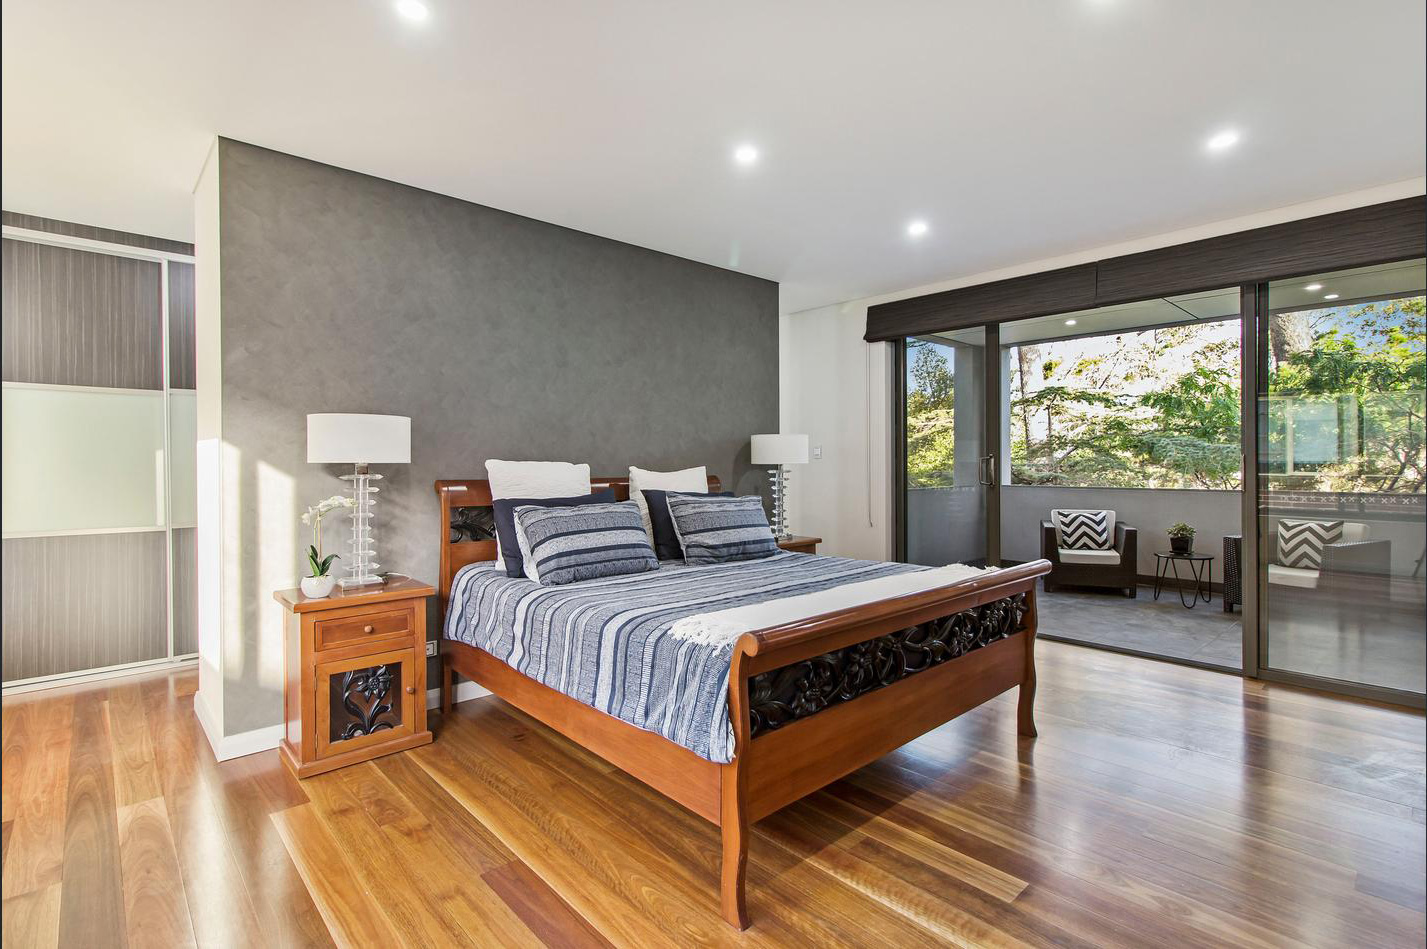 Home styling for sale Sydney Putney Bedroom